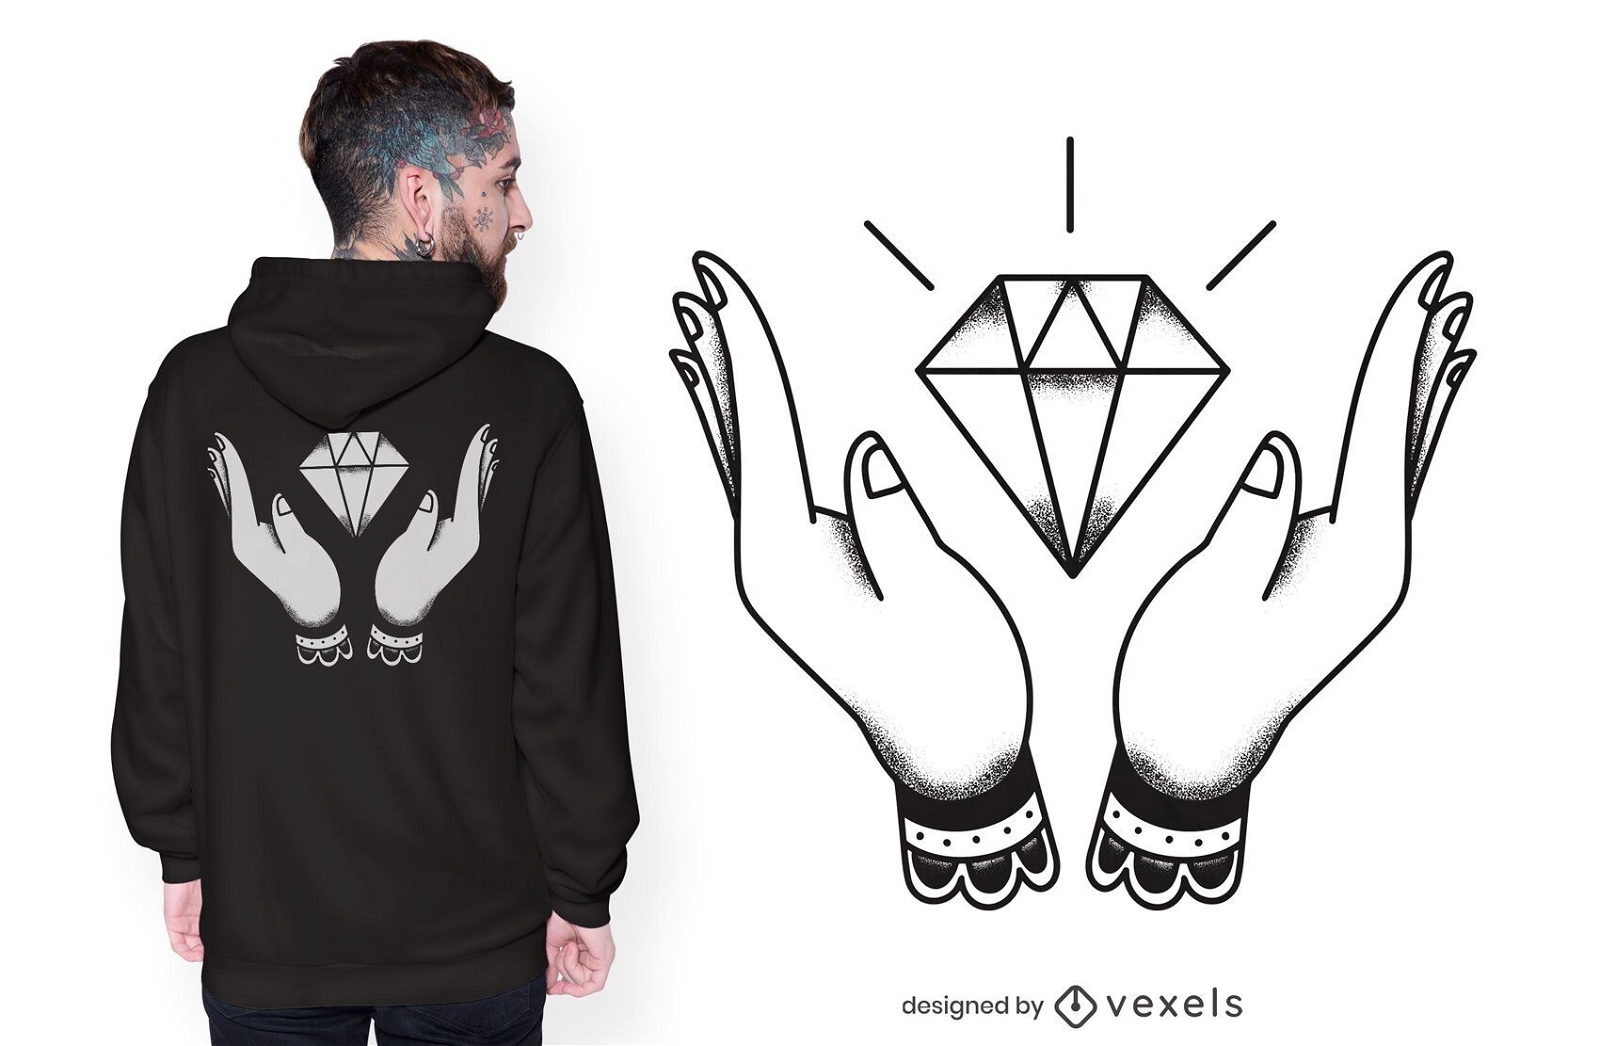 Hands diamond t-shirt design